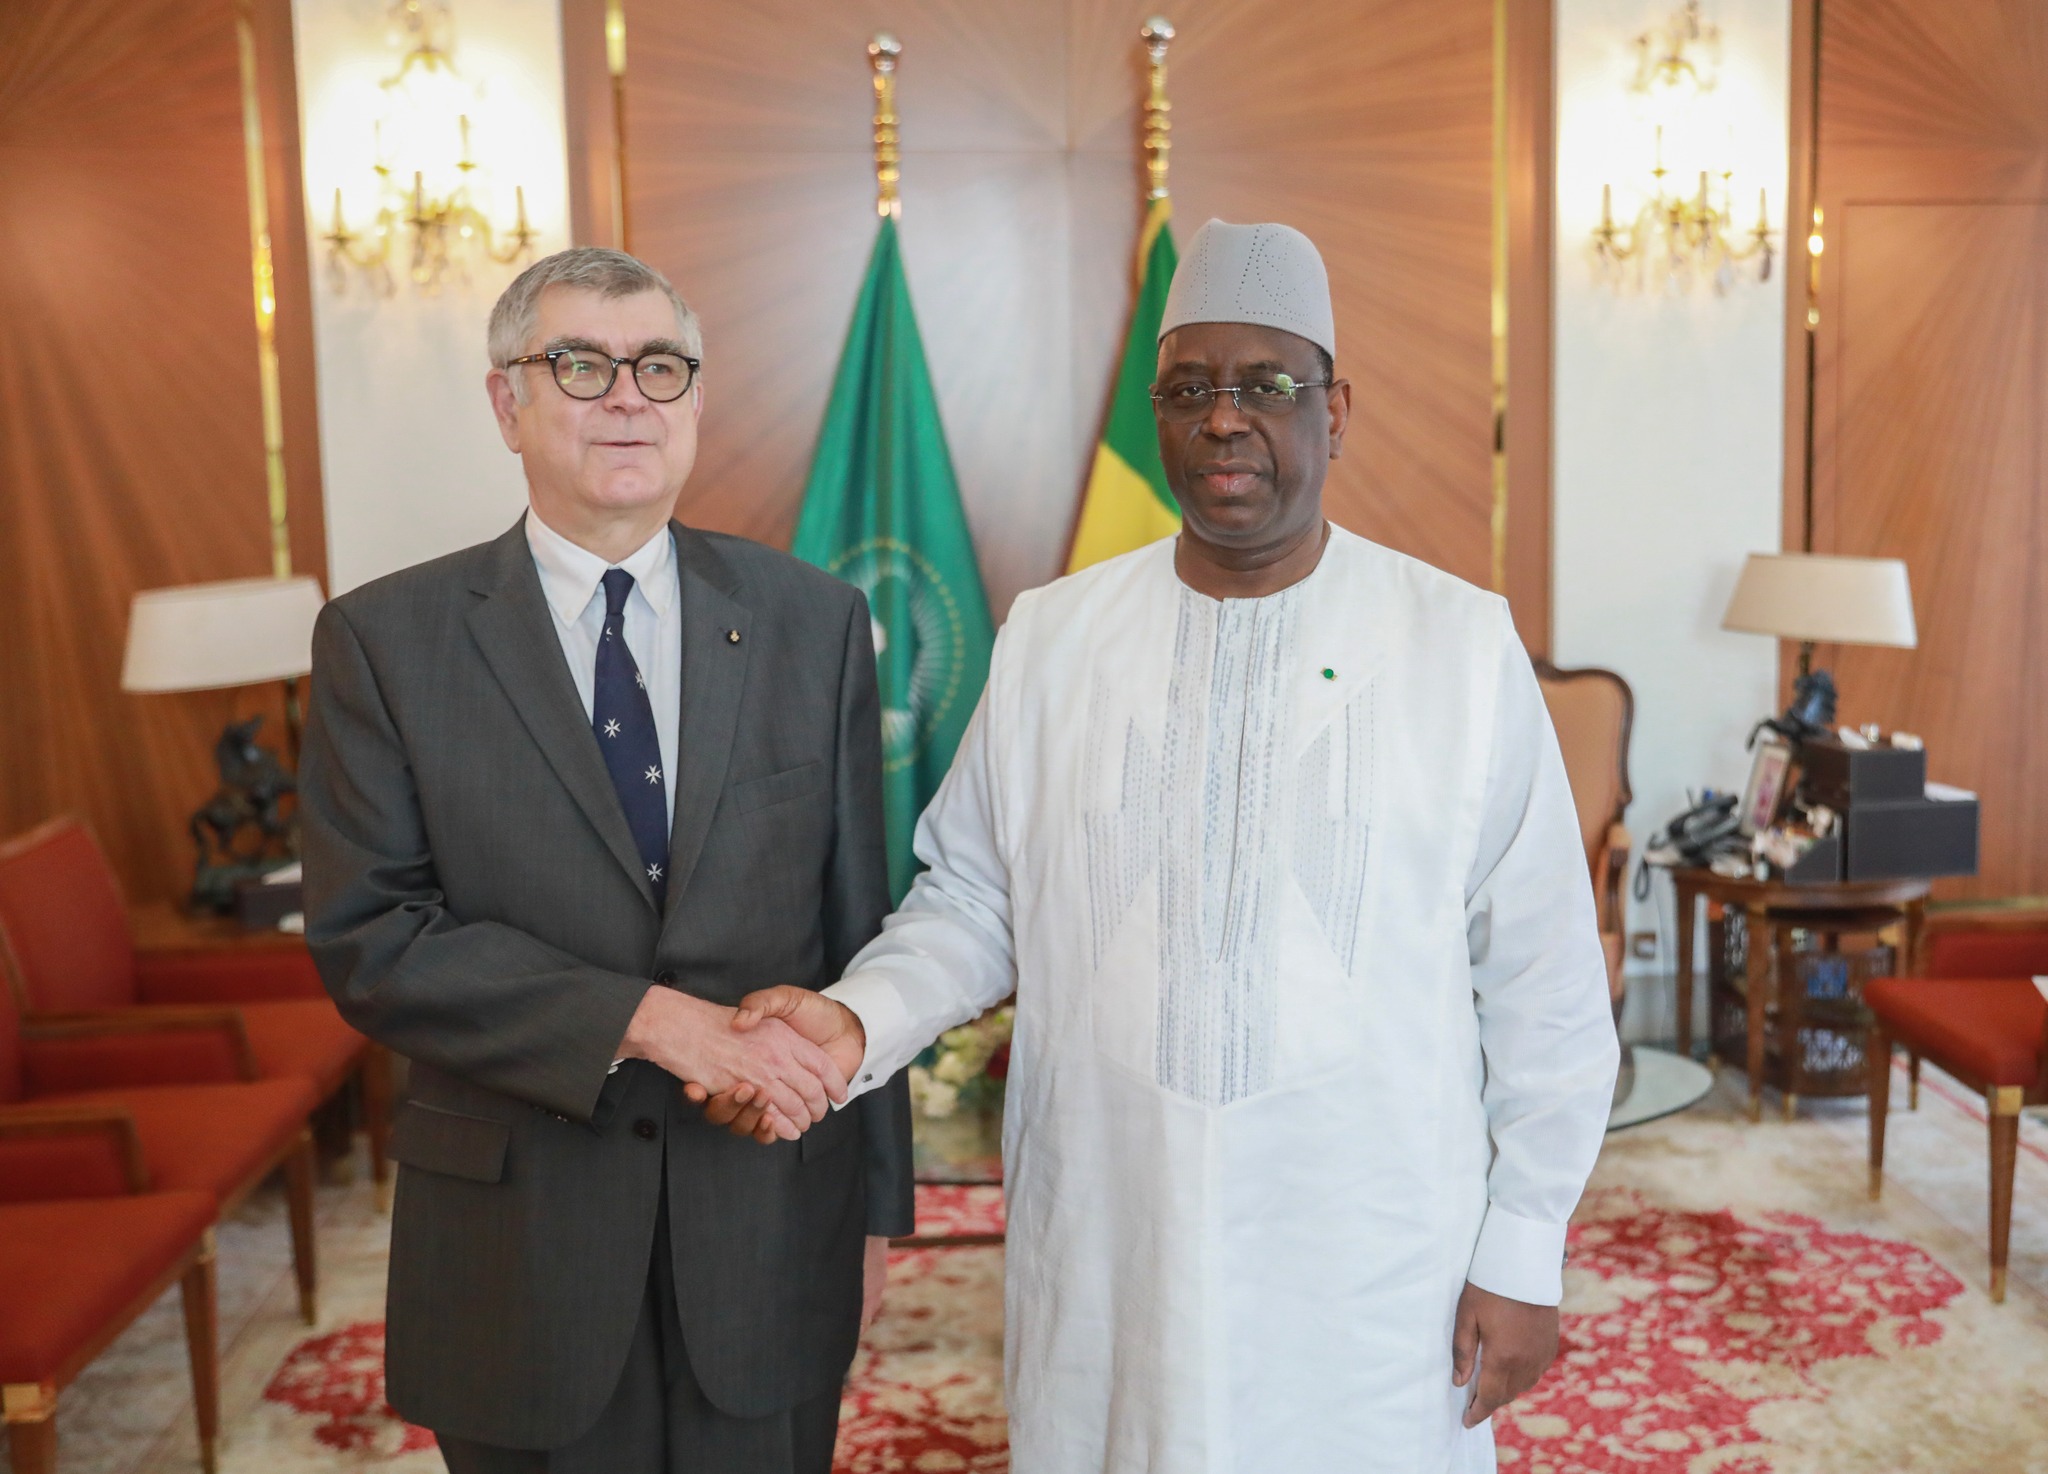 Der neue Botschafter des Malteserordens in Senegal legt seine Beglaubigungsschreiben vor